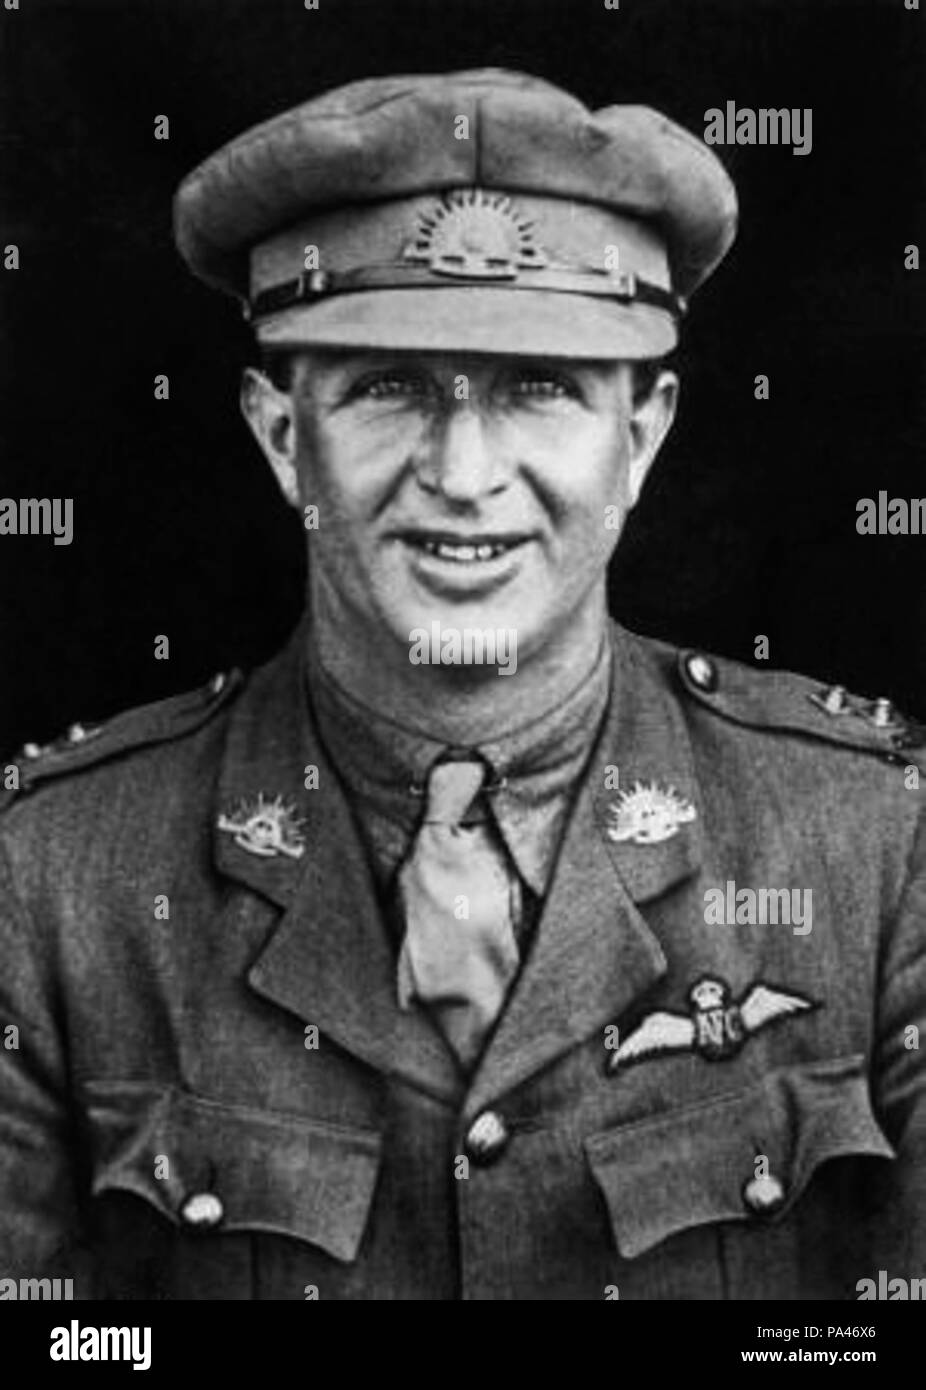 . Inglese: Ritratto di Eldyn Roy re DSO DFC, un australiano flying ace durante la Prima Guerra Mondiale accreditato con 26 vittorie aeree. tra circa 1917 e circa 1918 617 Eldyn R RE03717 Foto Stock